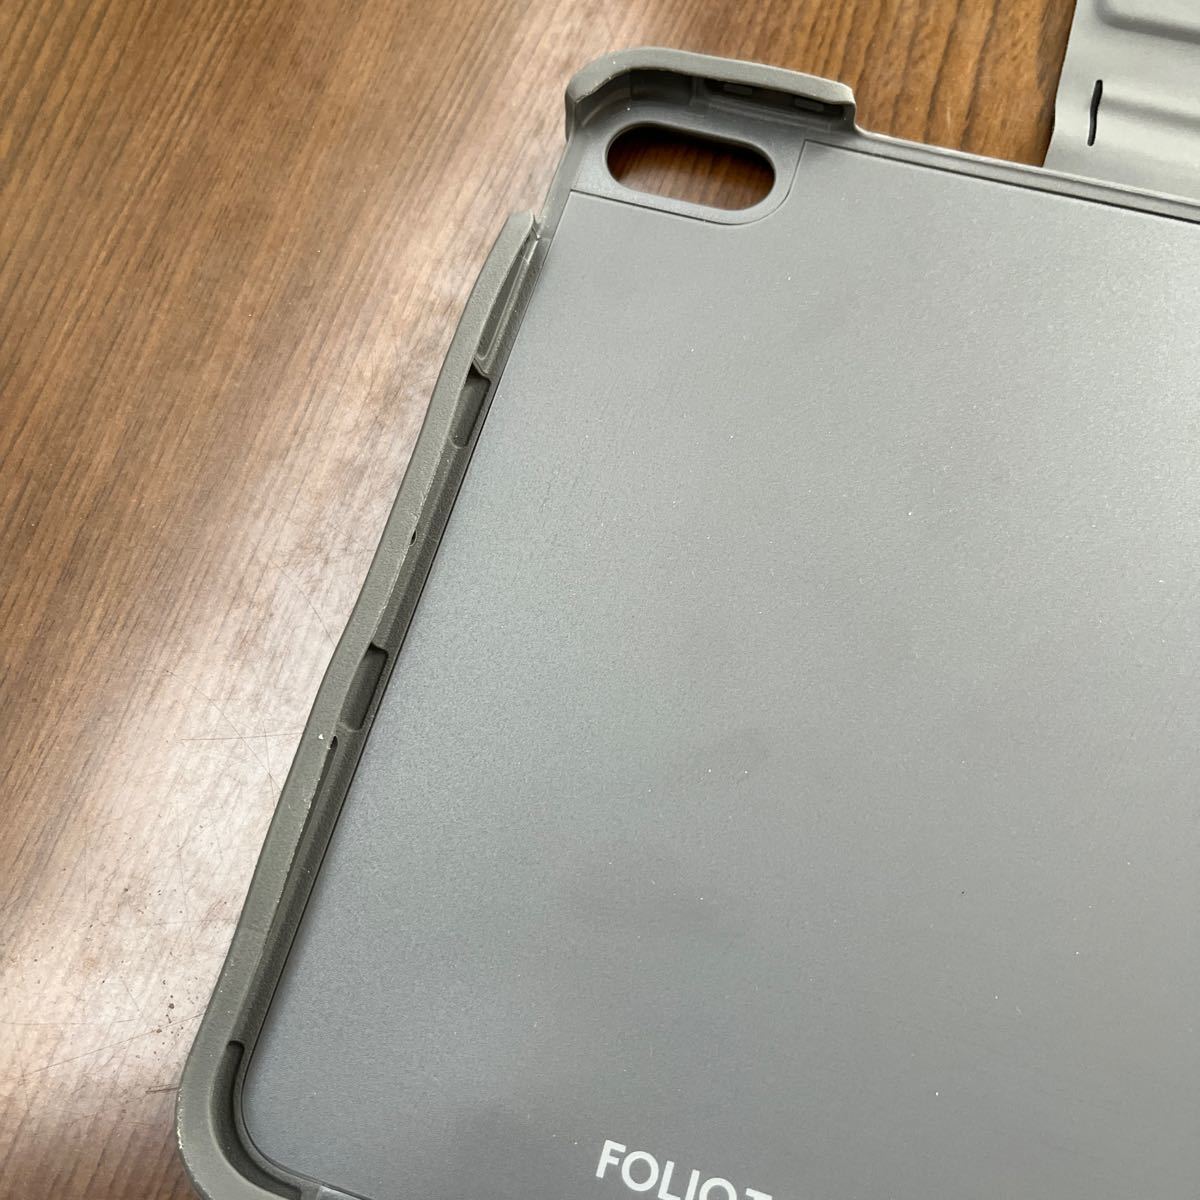 603p0116☆ Logicool(ロジクール) iPad Air 10.9インチ 第5世代 第4世代 対応 トラックパッド付き キーボード一体型ケース 